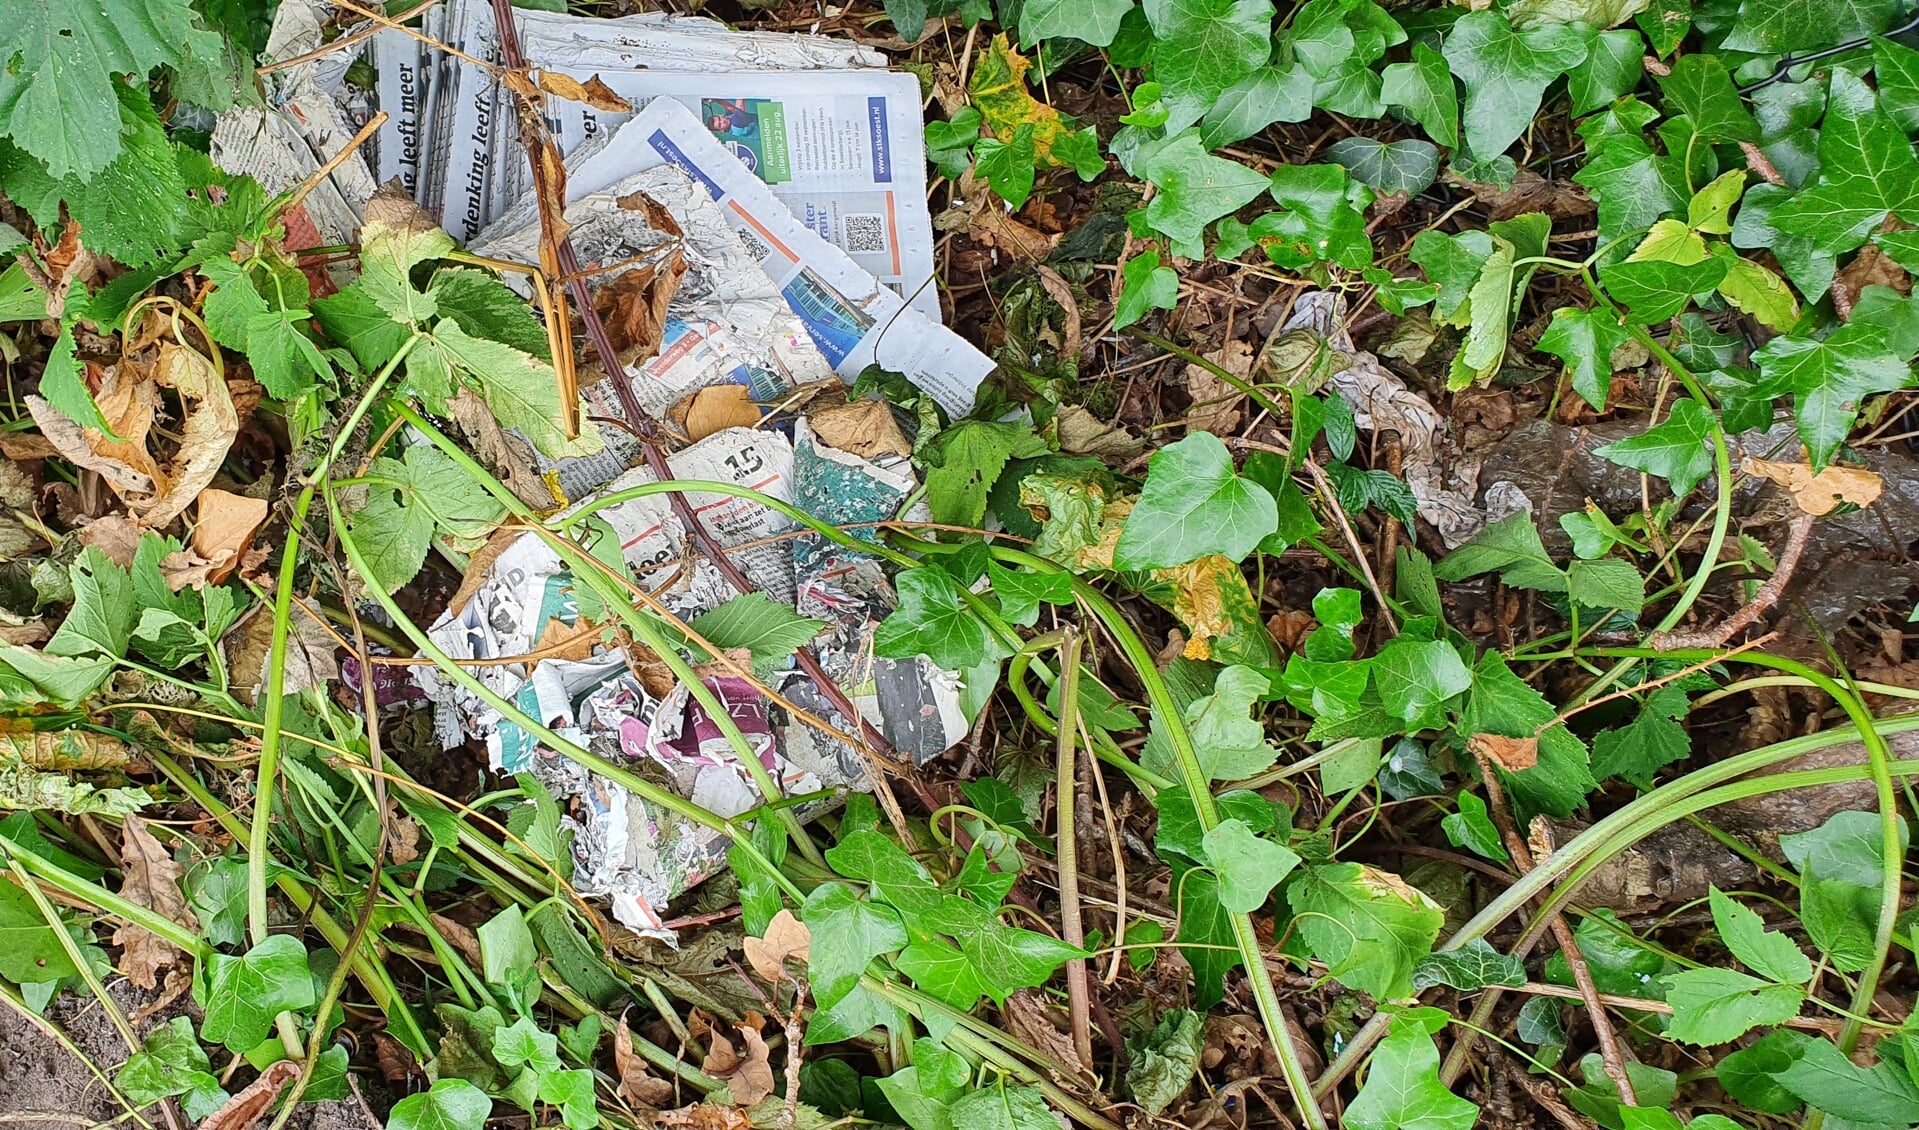 Kranten in de bosjes gedumpt